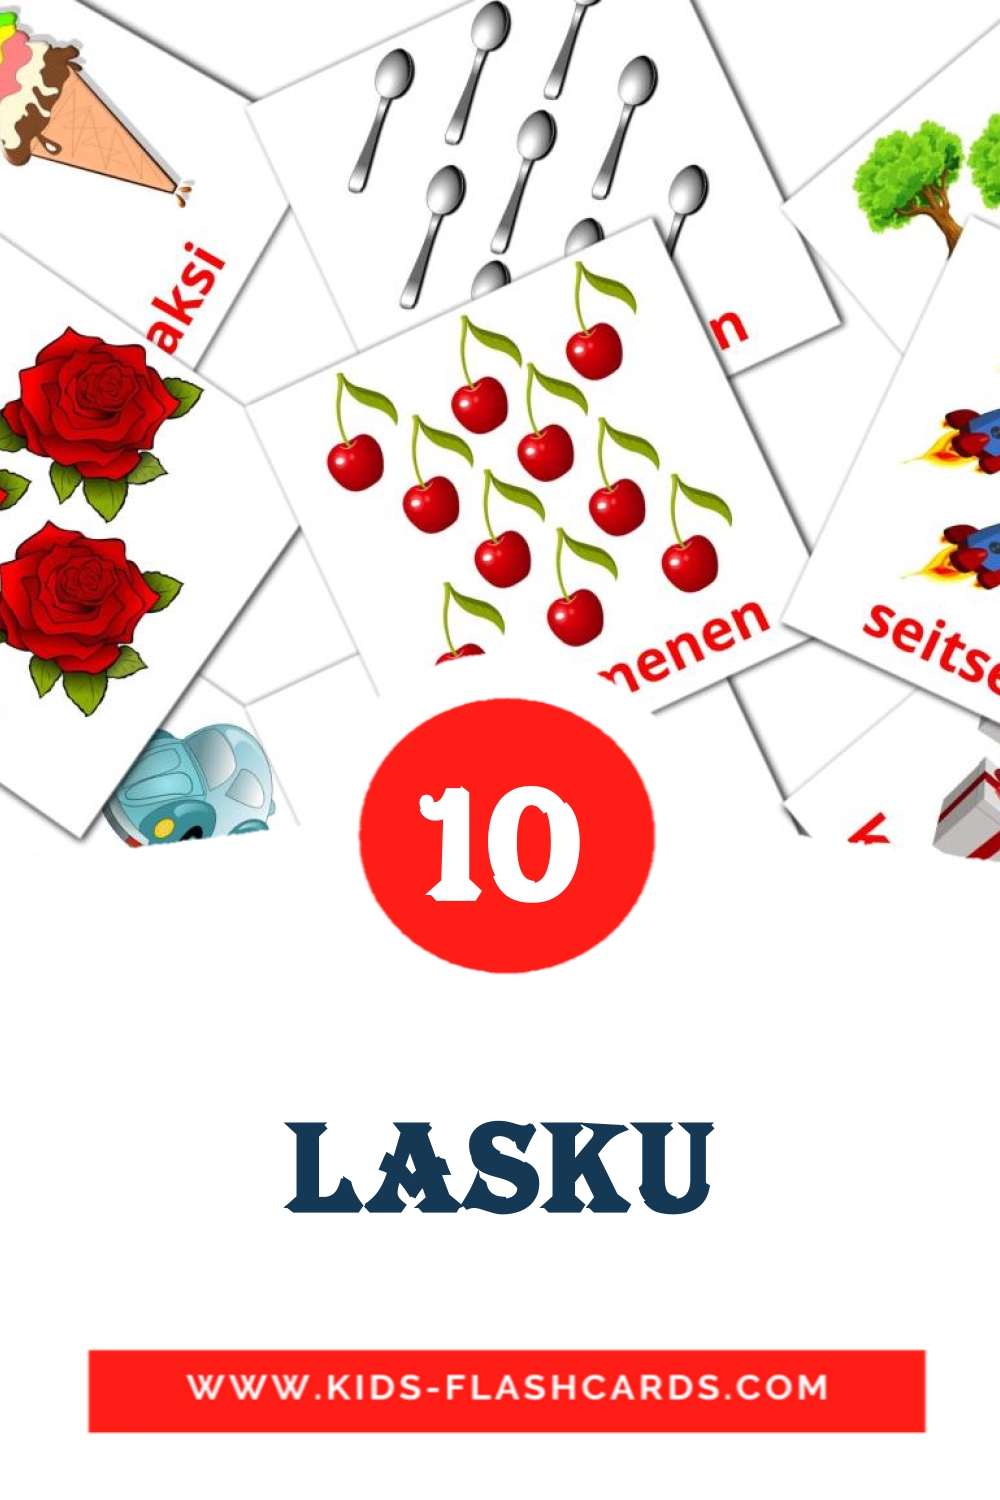 10 Cartões com Imagens de Lasku para Jardim de Infância em finlandês